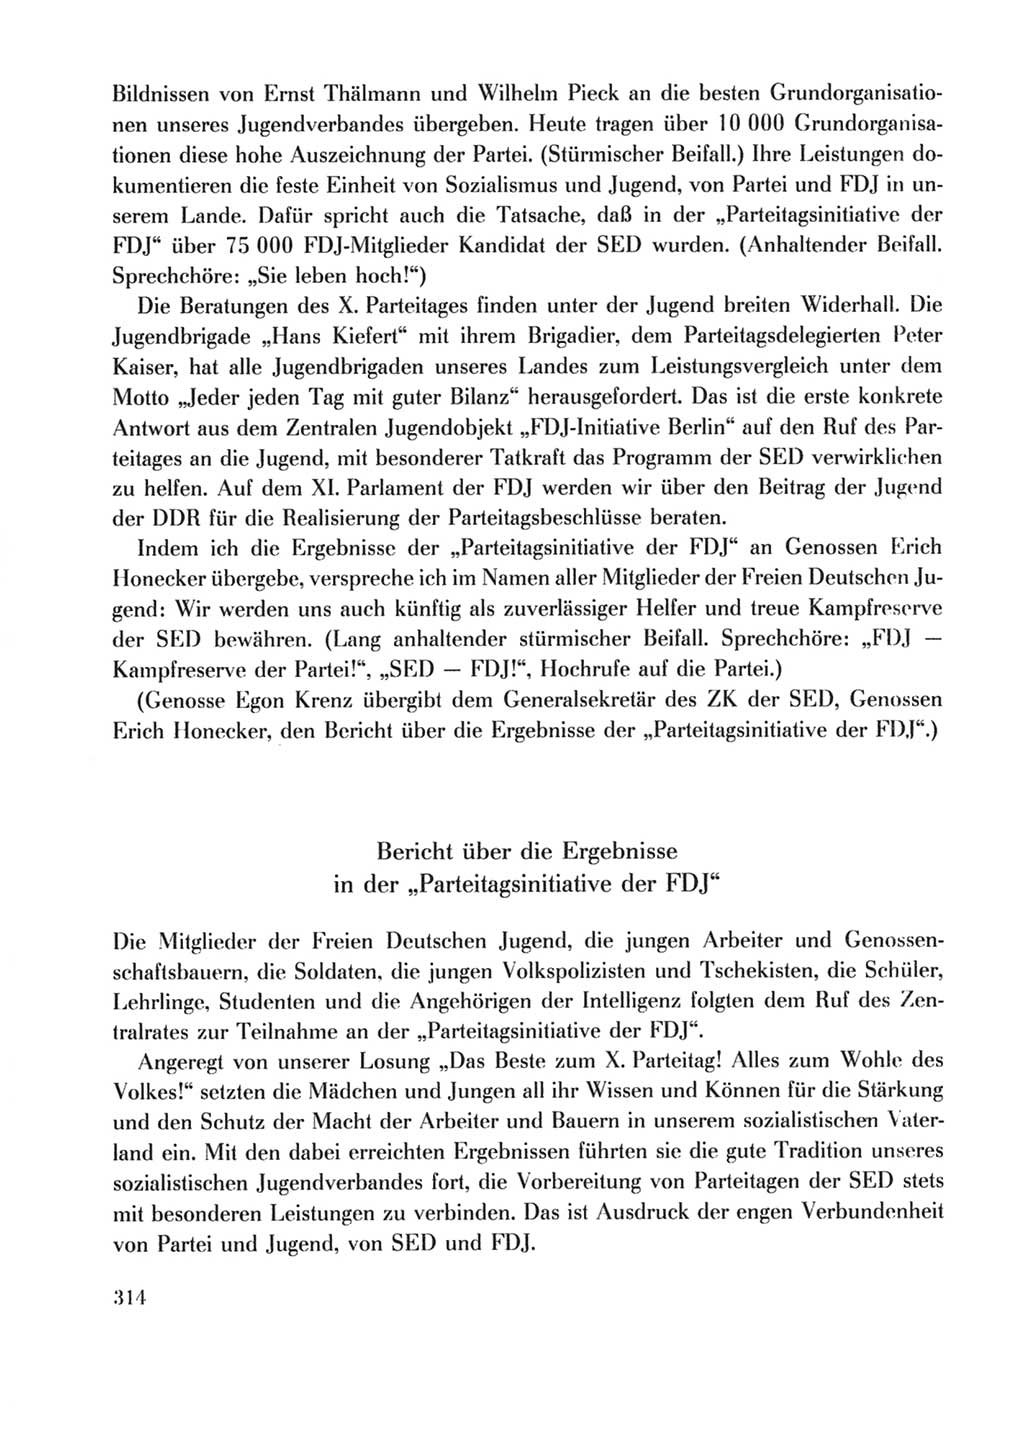 Protokoll der Verhandlungen des Ⅹ. Parteitages der Sozialistischen Einheitspartei Deutschlands (SED) [Deutsche Demokratische Republik (DDR)] 1981, Band 2, Seite 314 (Prot. Verh. Ⅹ. PT SED DDR 1981, Bd. 2, S. 314)